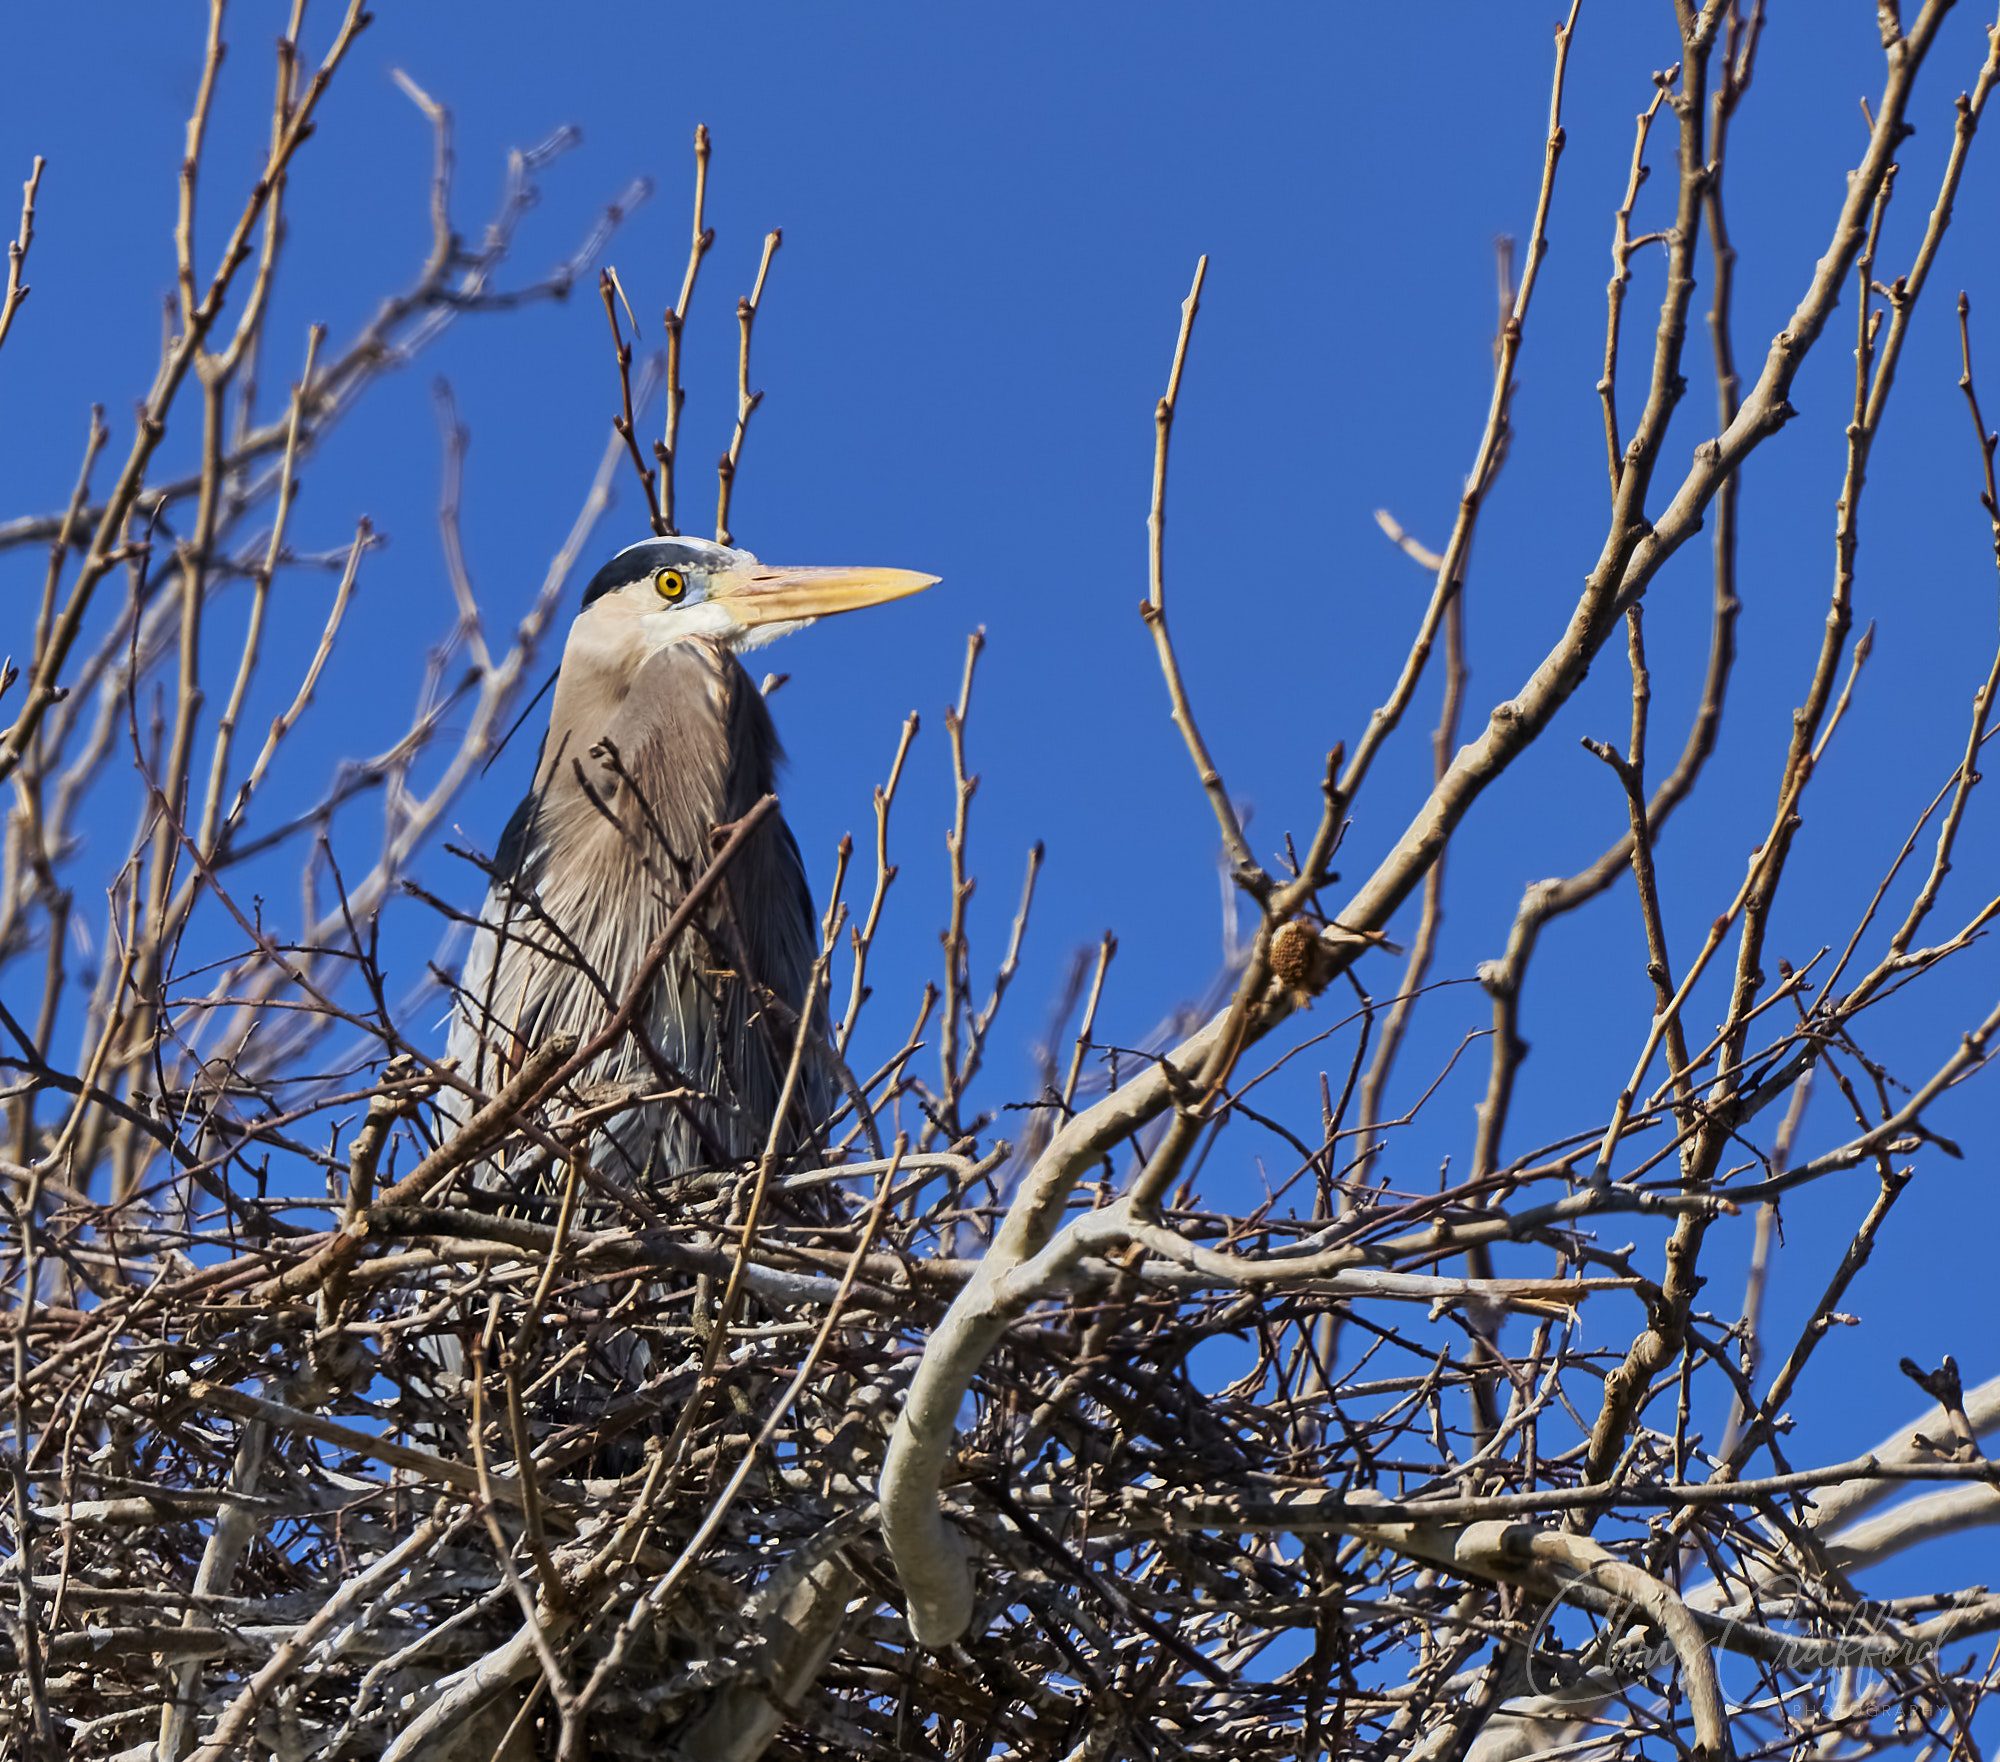 Female Heron on her nest